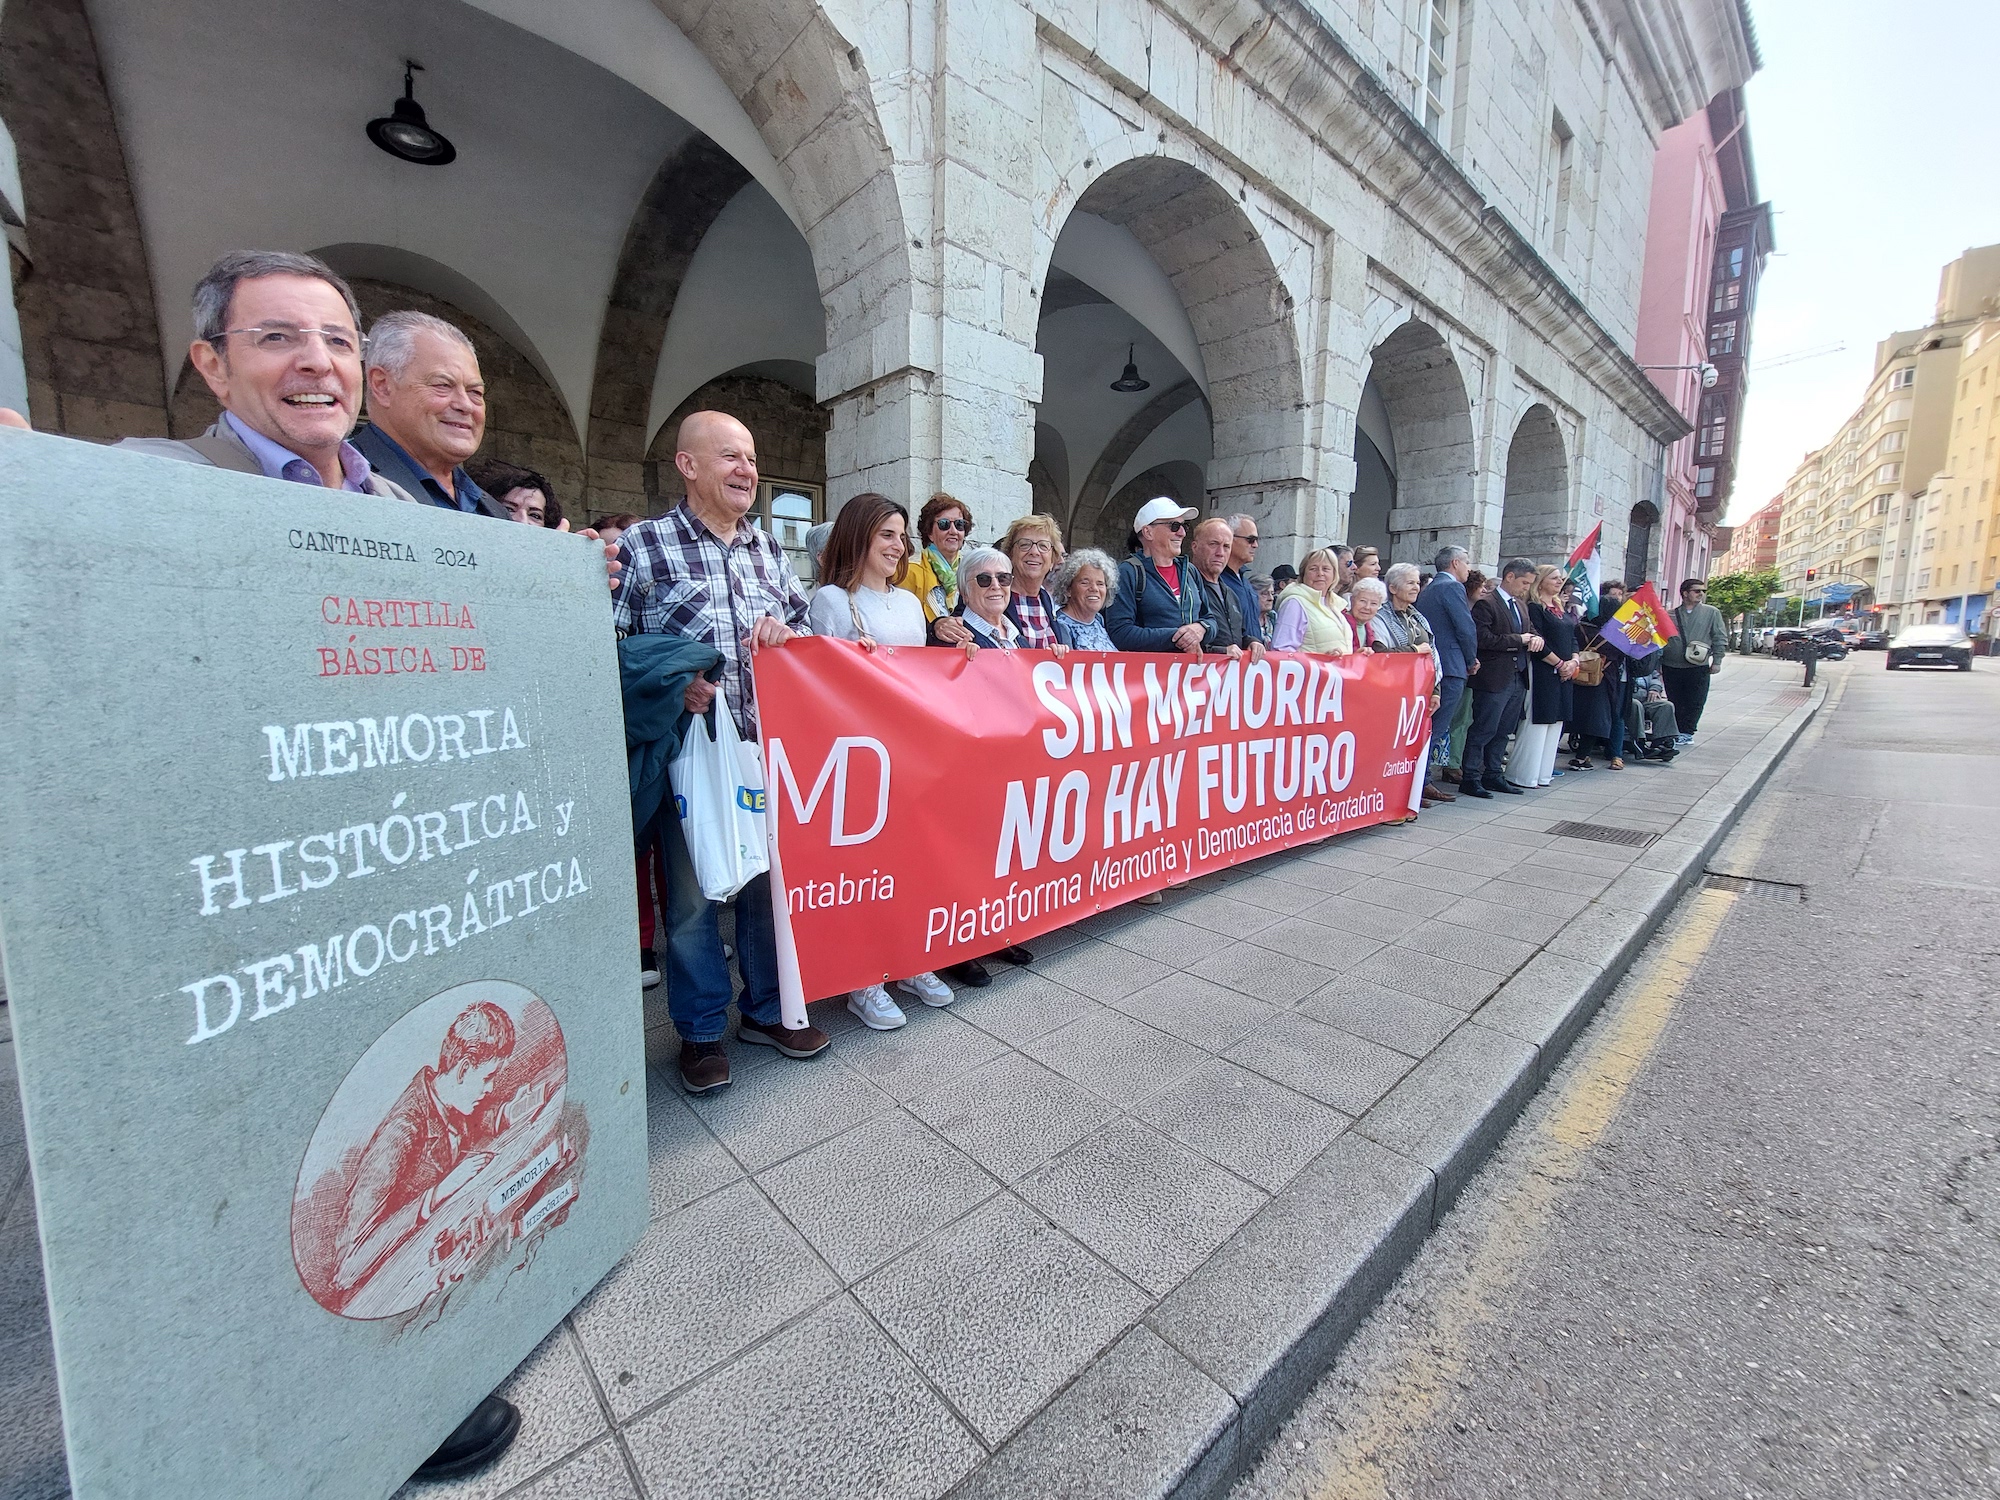 La Plataforma Memoria y Democracia regala una Cartilla a los diputados del PP en Cantabria “para que no se contagien del negacionismo de Vox”